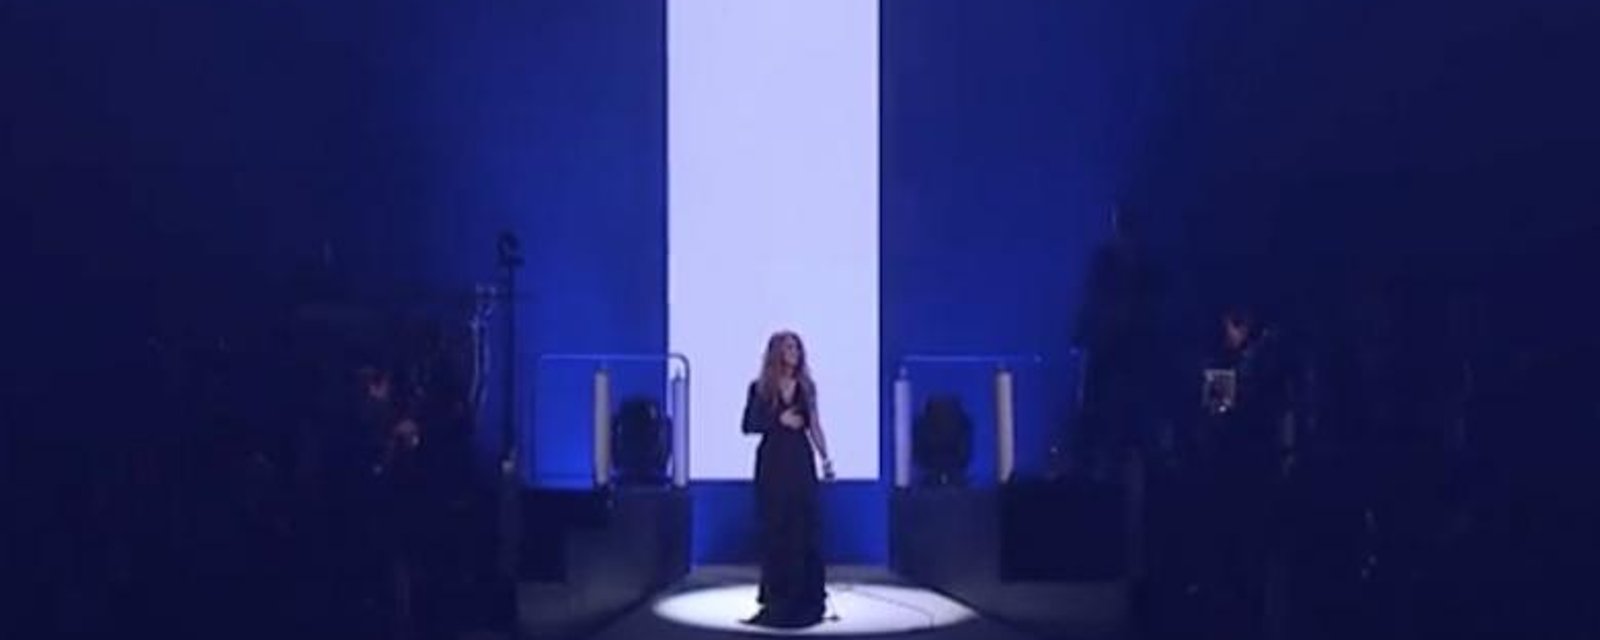 Toute la performance de Céline Dion en live à Paris disponible ici